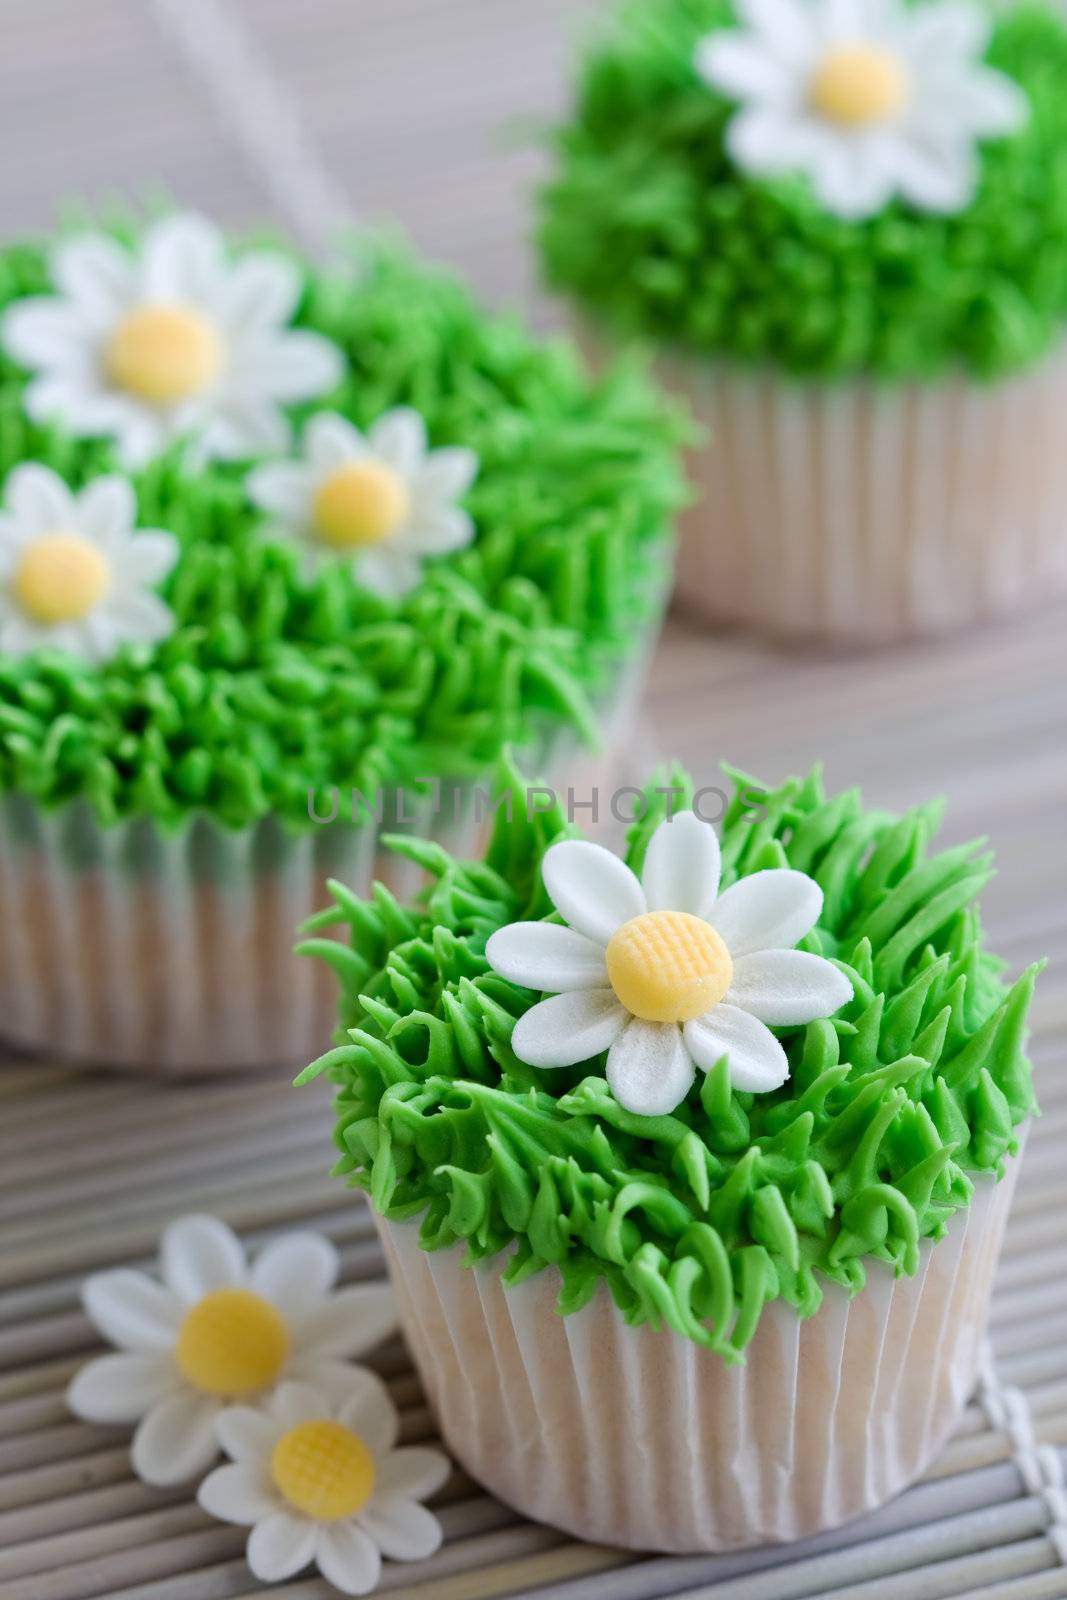 Daisy cupcakes by RuthBlack